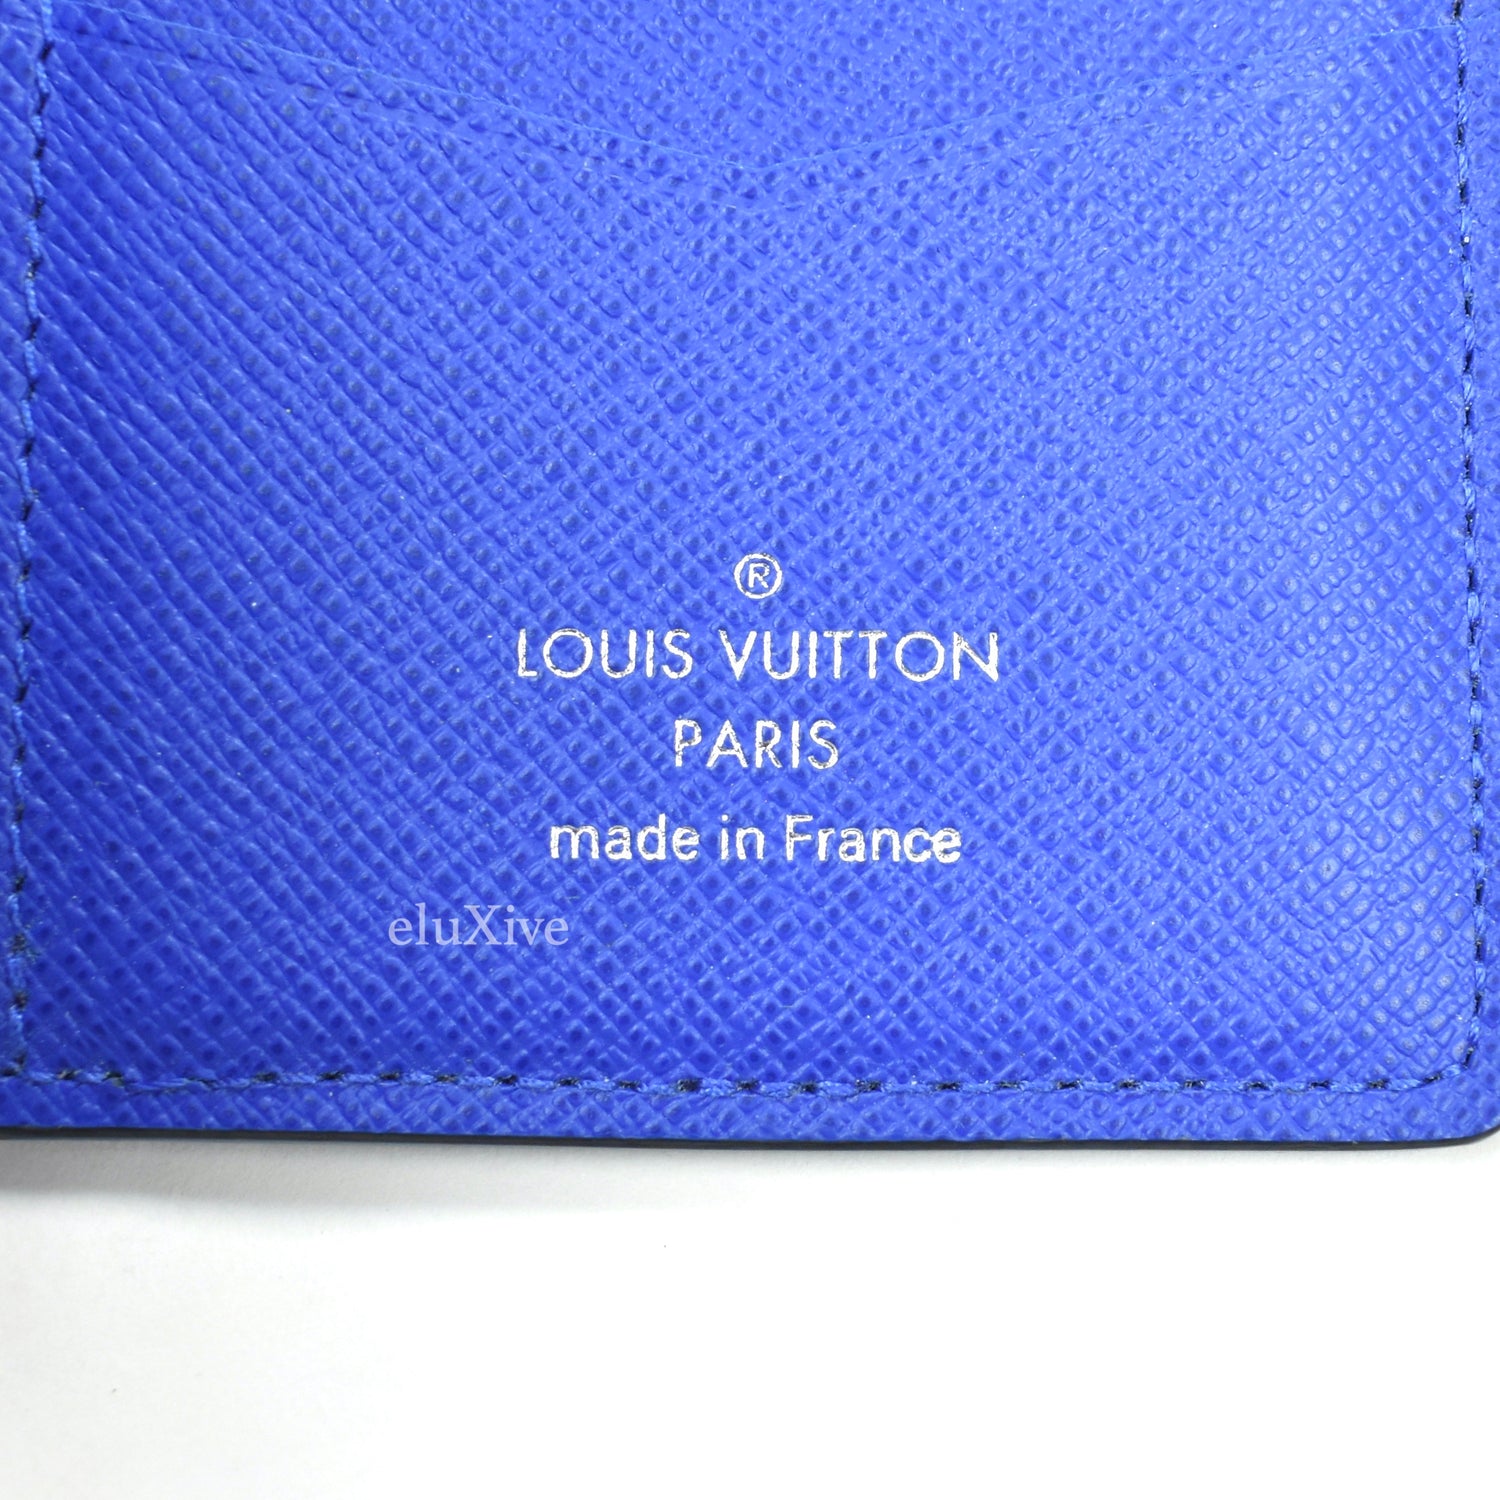 Pocket Organizer Collection : r/Louisvuitton